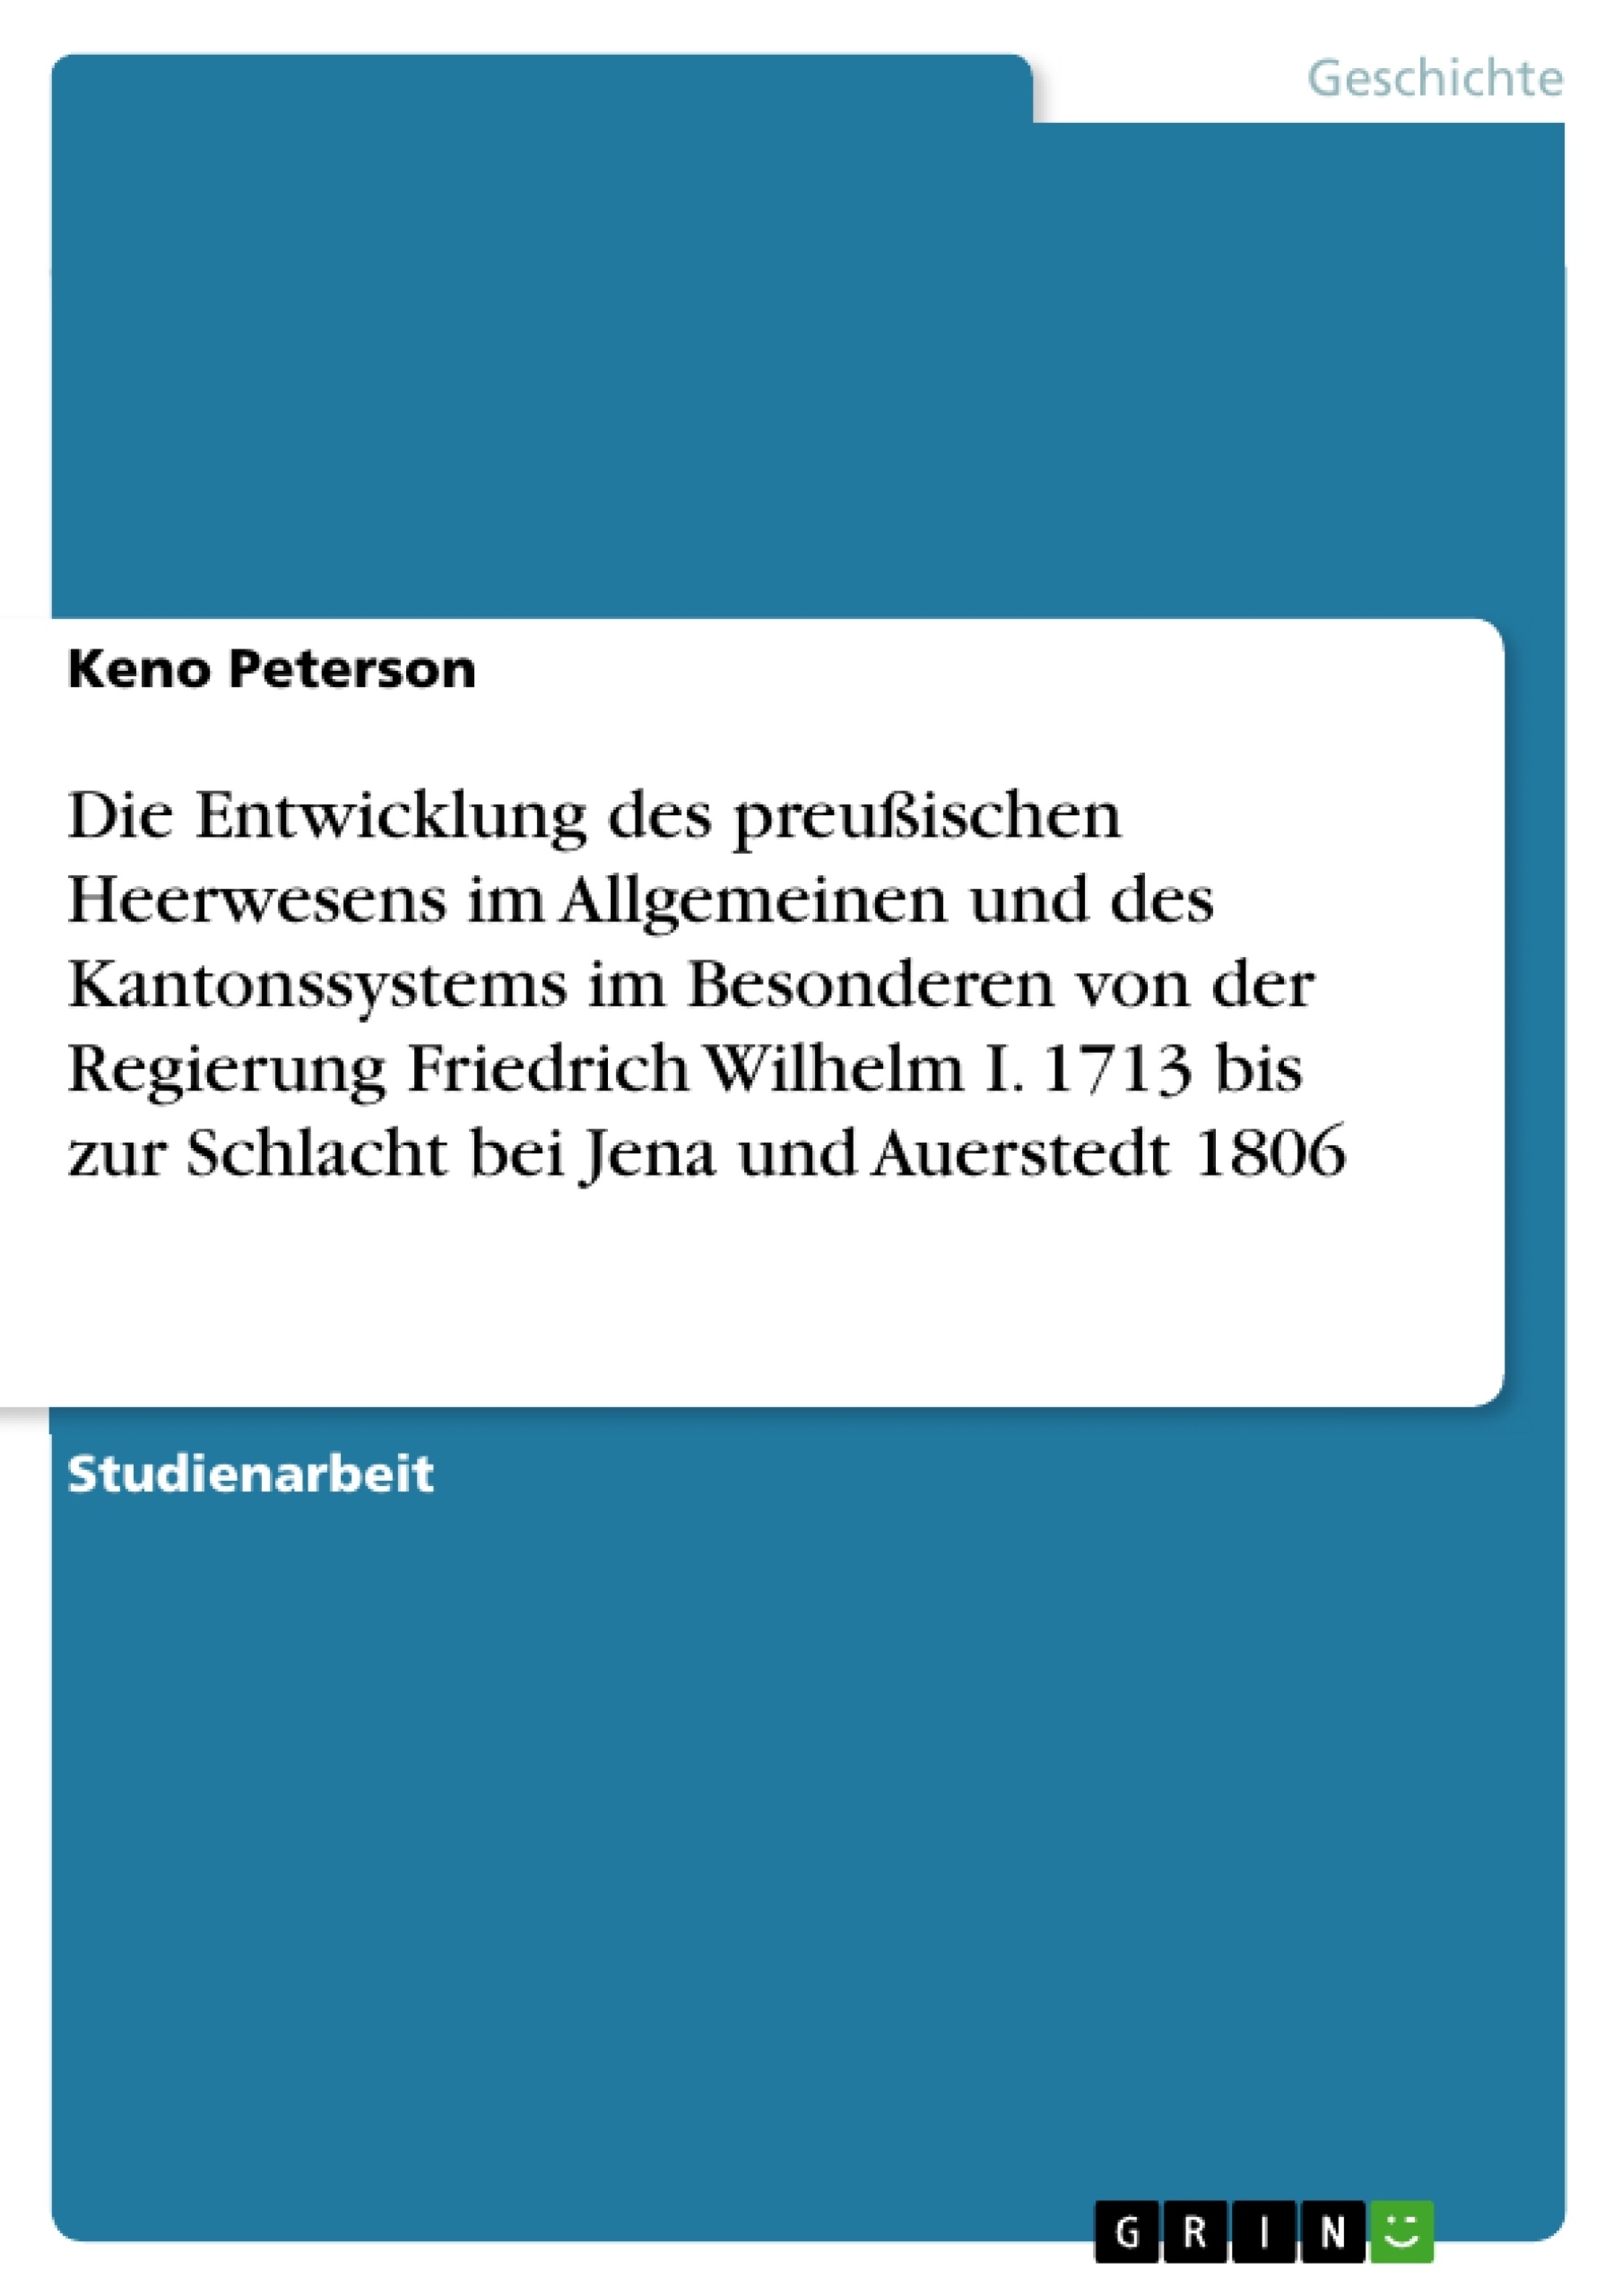 Titel: Die Entwicklung des preußischen Heerwesens im Allgemeinen und des Kantonssystems im Besonderen von der Regierung Friedrich Wilhelm I. 1713 bis zur Schlacht bei Jena und Auerstedt 1806 